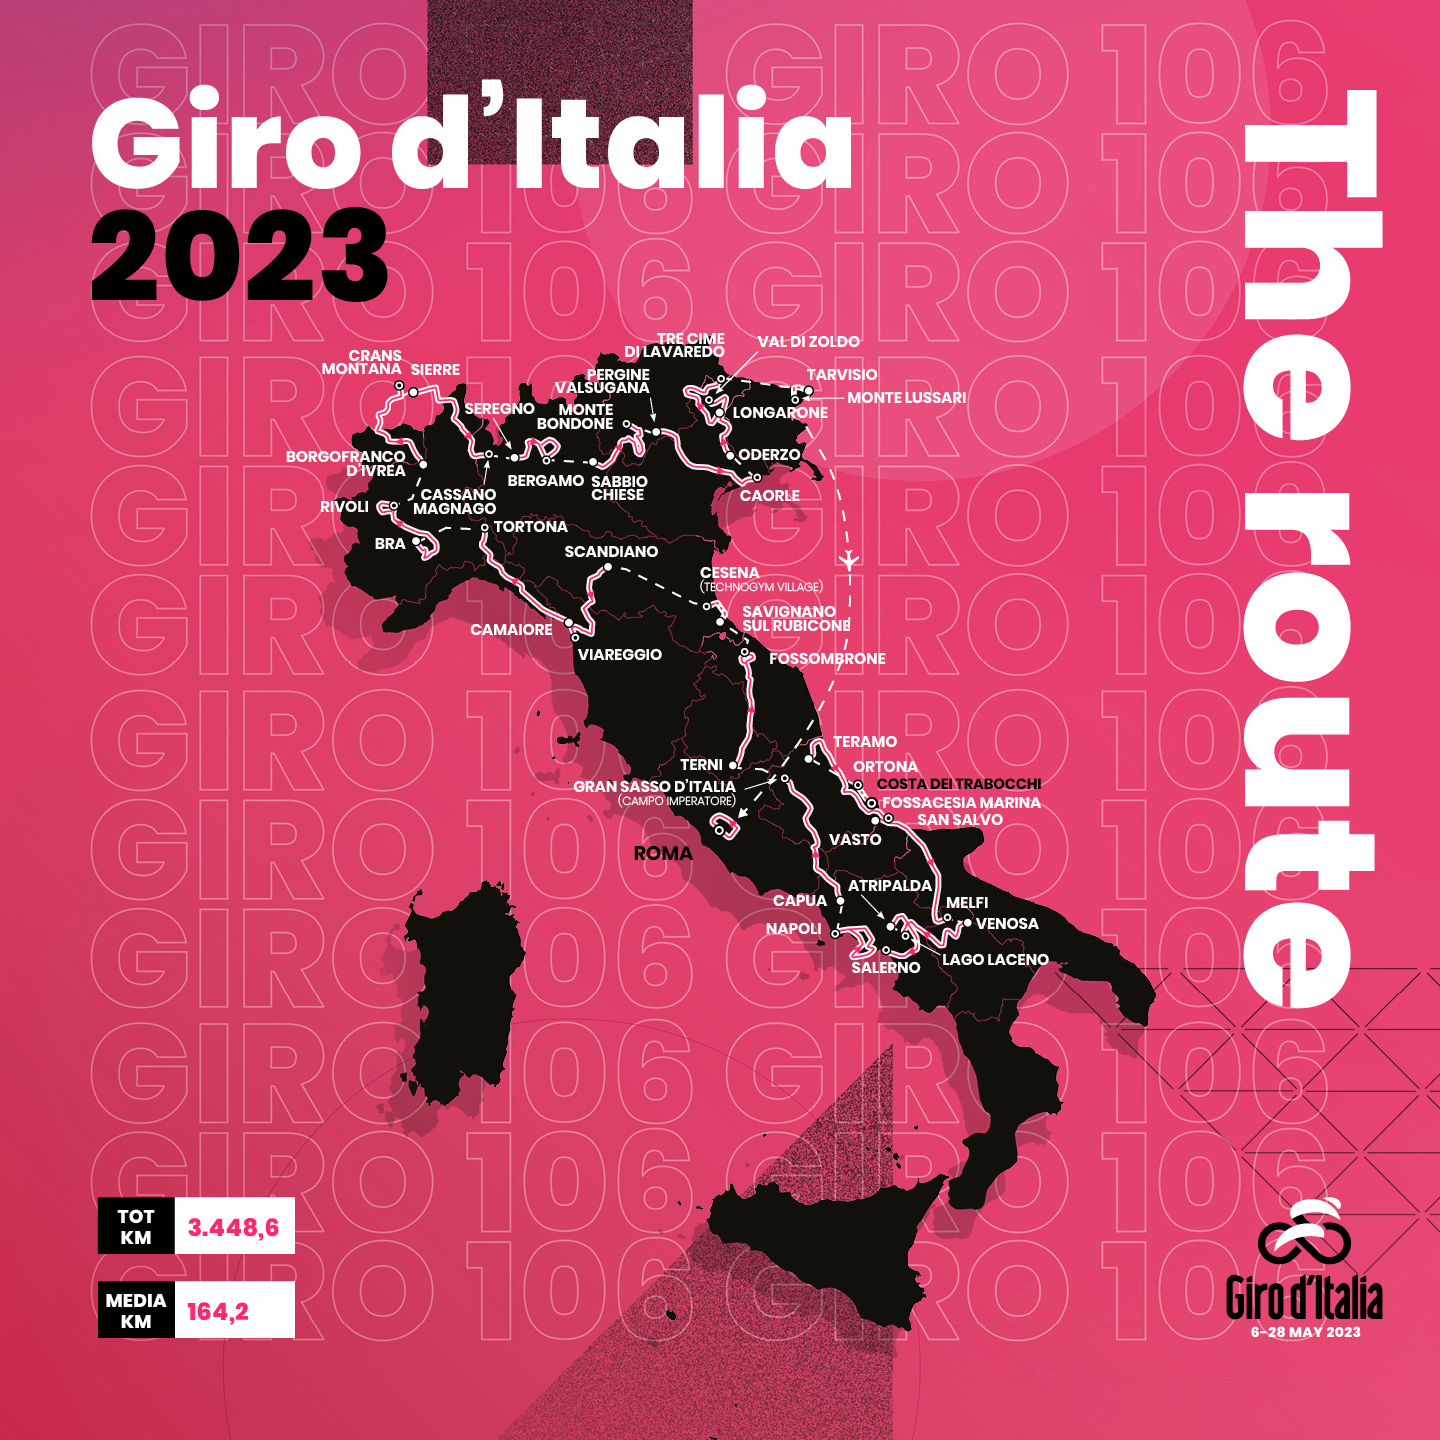 Ciclismo, ecco il Giro d'Italia 2023: niente tappe in Liguria, regione attraversata solo di passaggio